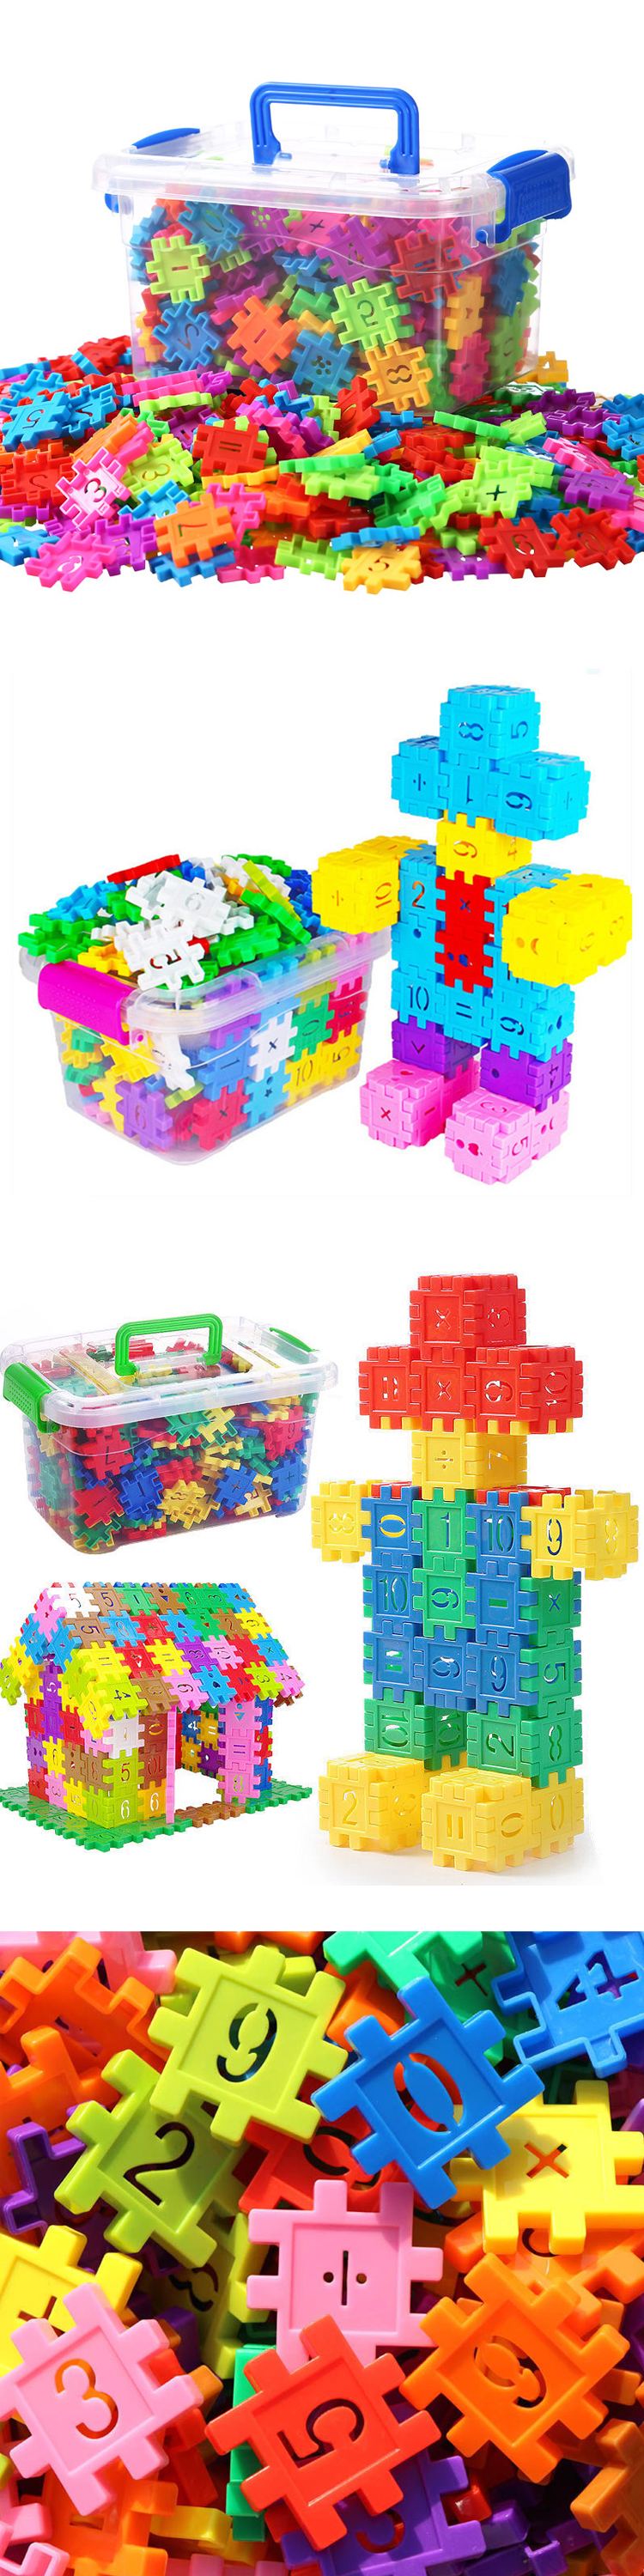 Children's large particle assembled building block toys